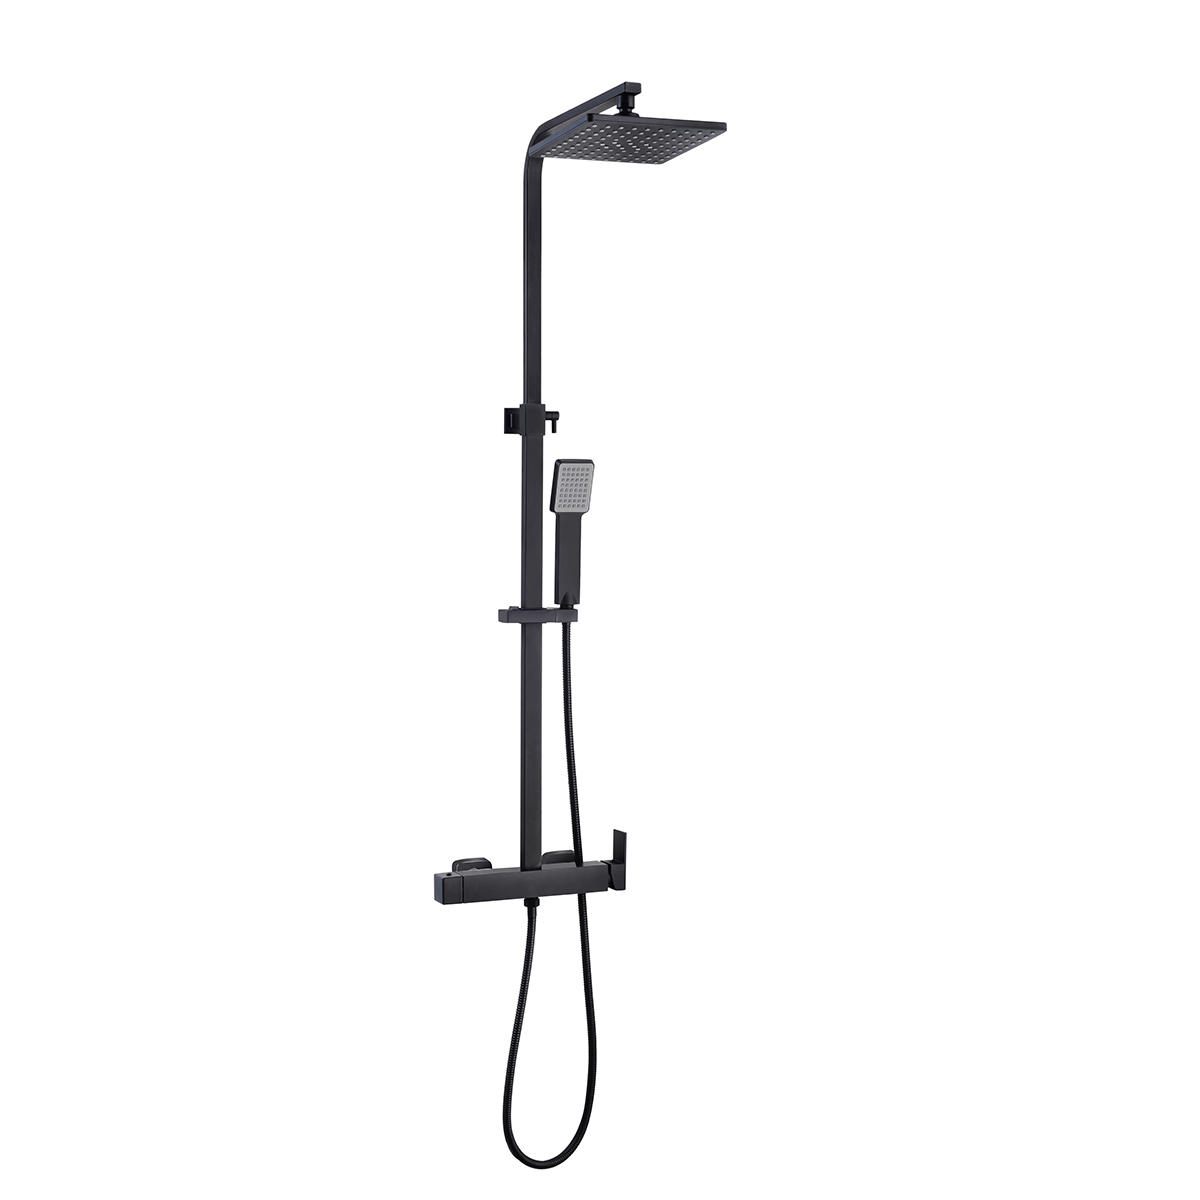 YS34185B Colonna doccia quadrata, colonna doccia a pioggia con rubinetto doccia, regolabile in altezza;